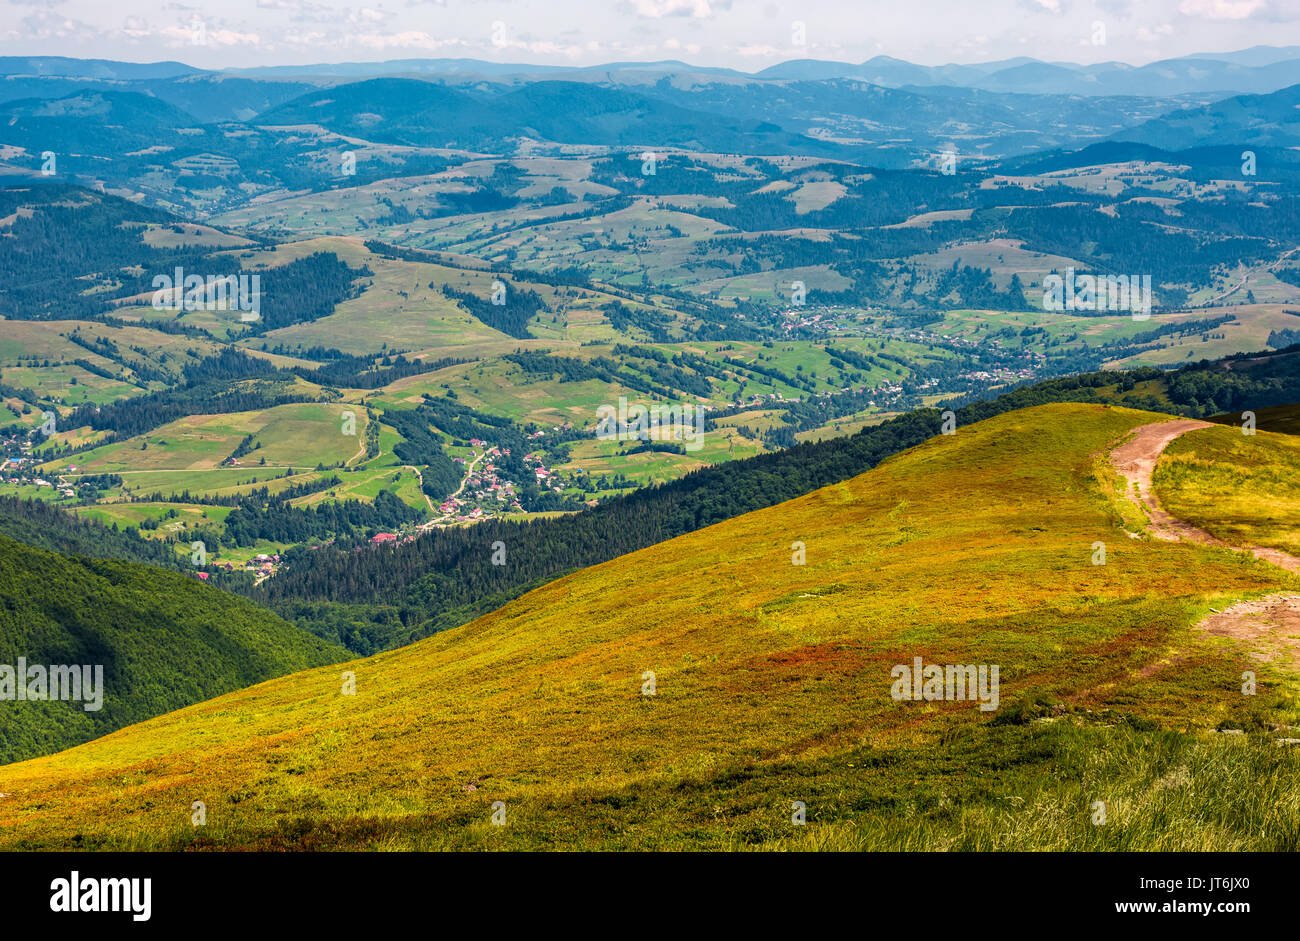 Vista de la zona rural de la alta montaña. precioso paisaje de verano en las montañas de los Cárpatos. Foto de stock